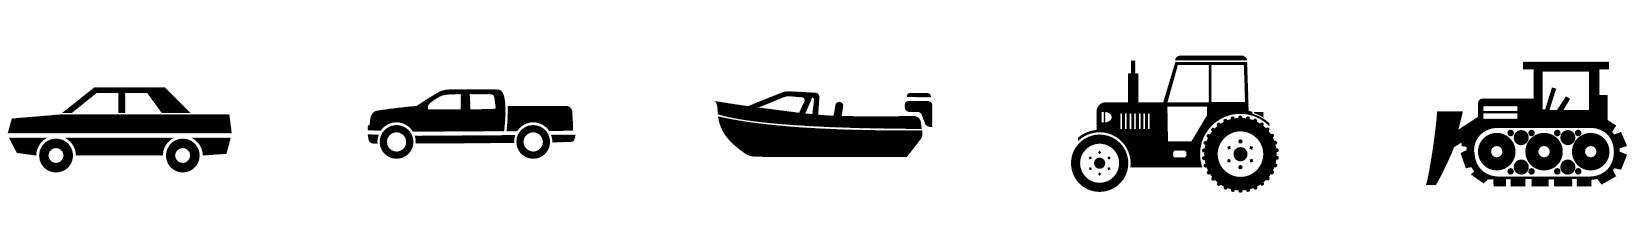 il pannello solare per barca è consigliato per auto, pick up, barche, trattori e macchine industriali